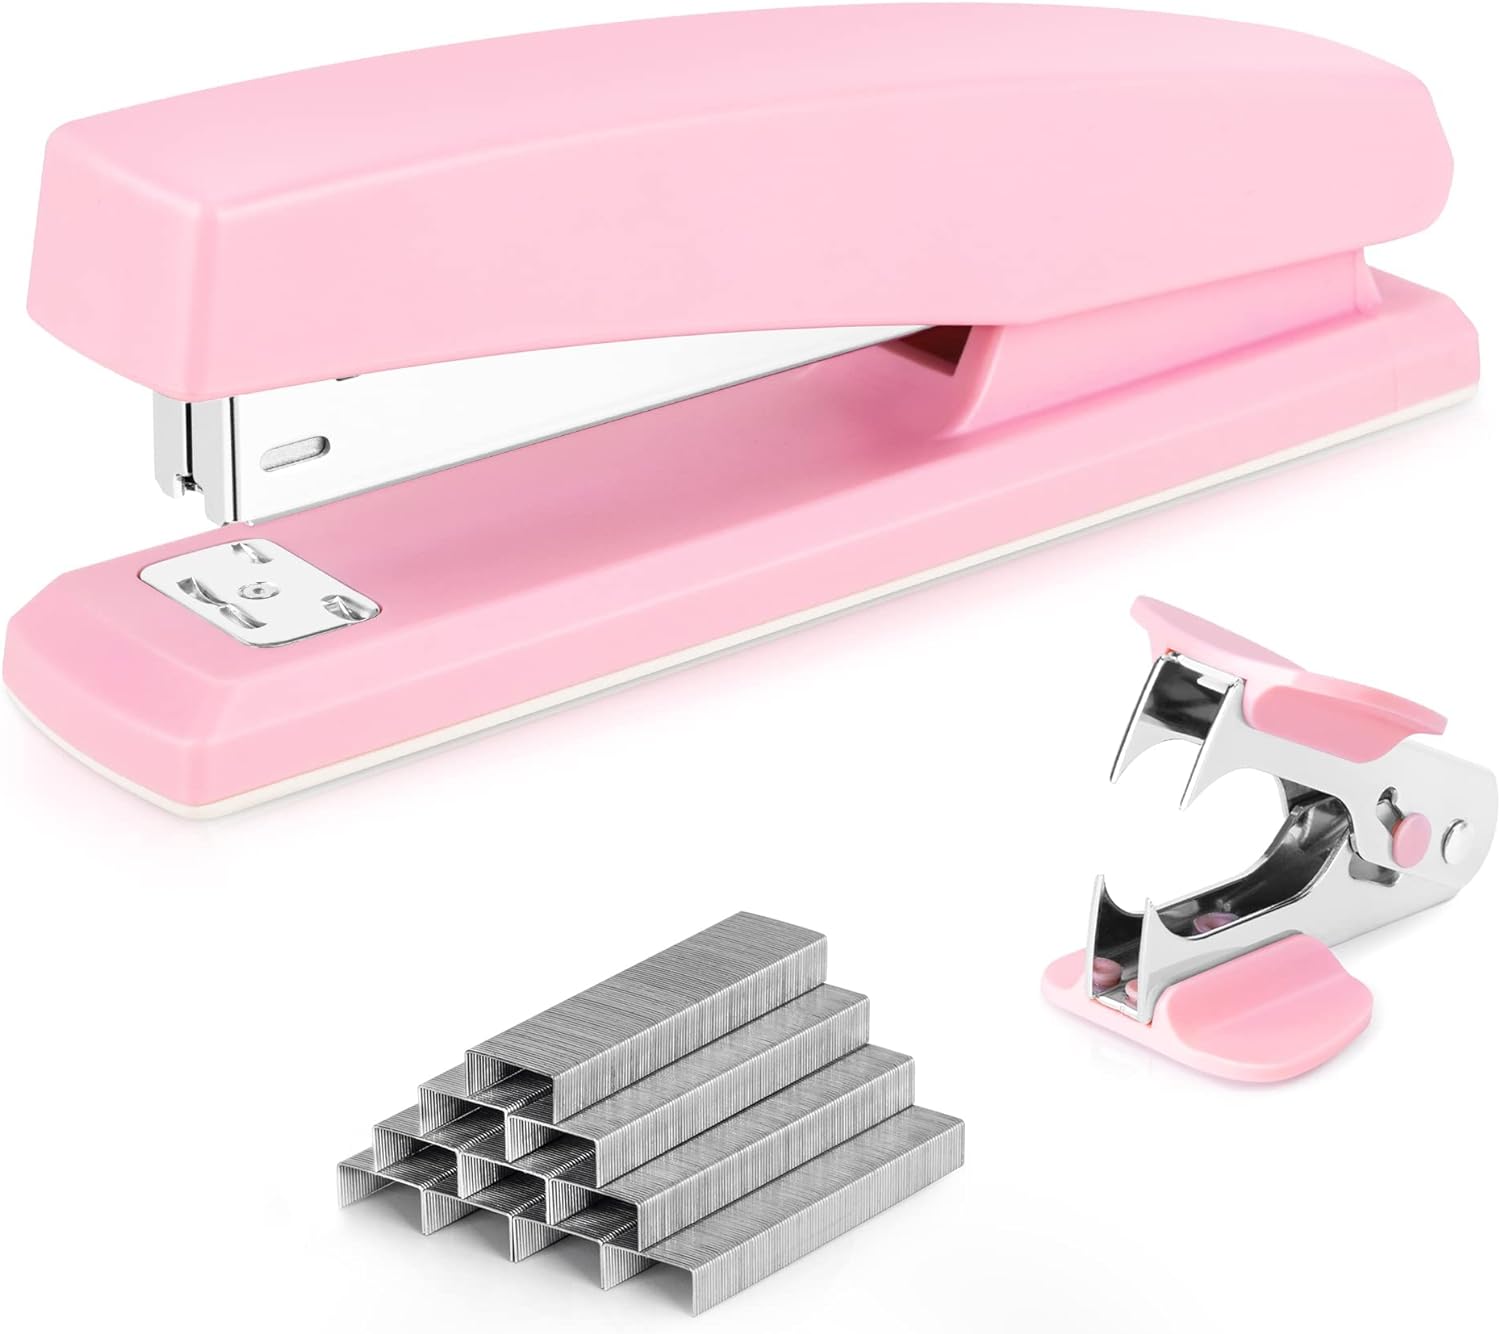 Deli Stapler, Desktop Stapler, Office Stapler, 25 Sheet Capacity, Includes 1000 Staples and Staple Remover, Pink